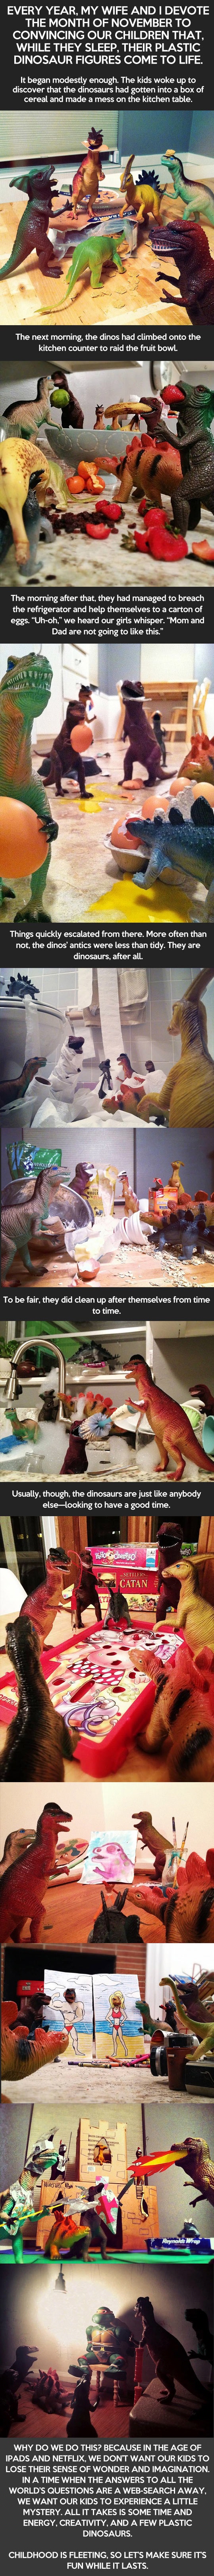 Imaginacion y Dinosaurios